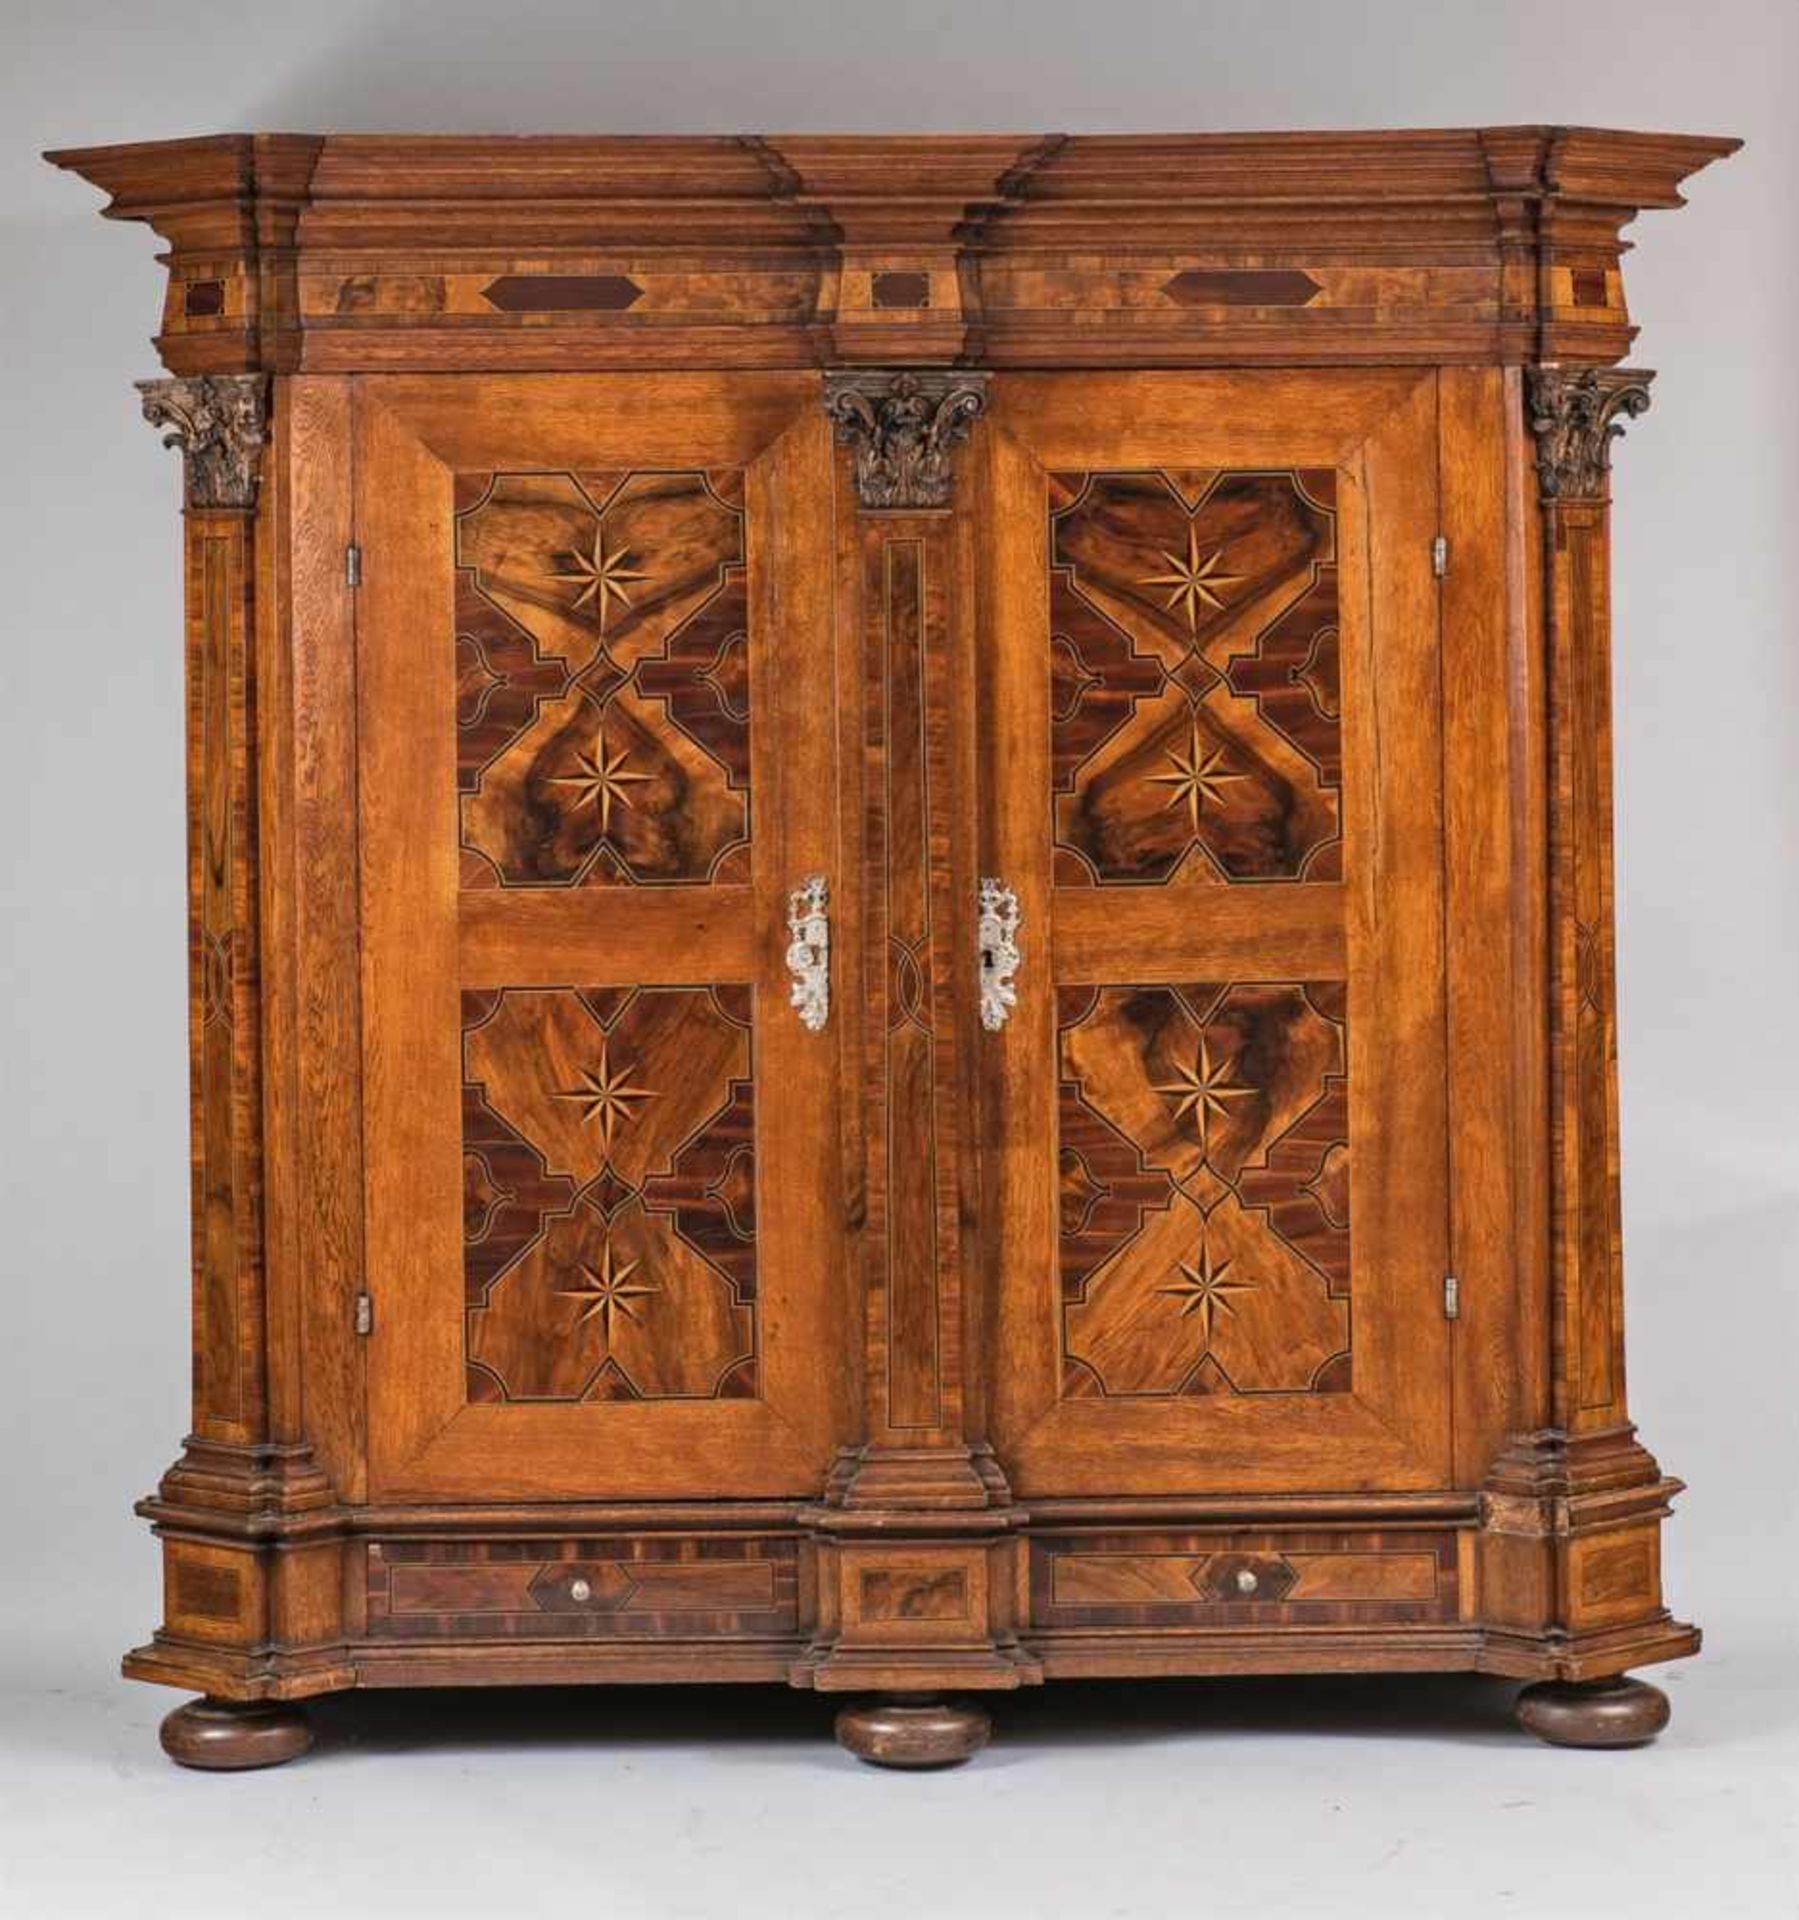 A German pilaster cabinetWalnut, oak, plum, maple, and ebonised wood veneer on softwood, cast iron